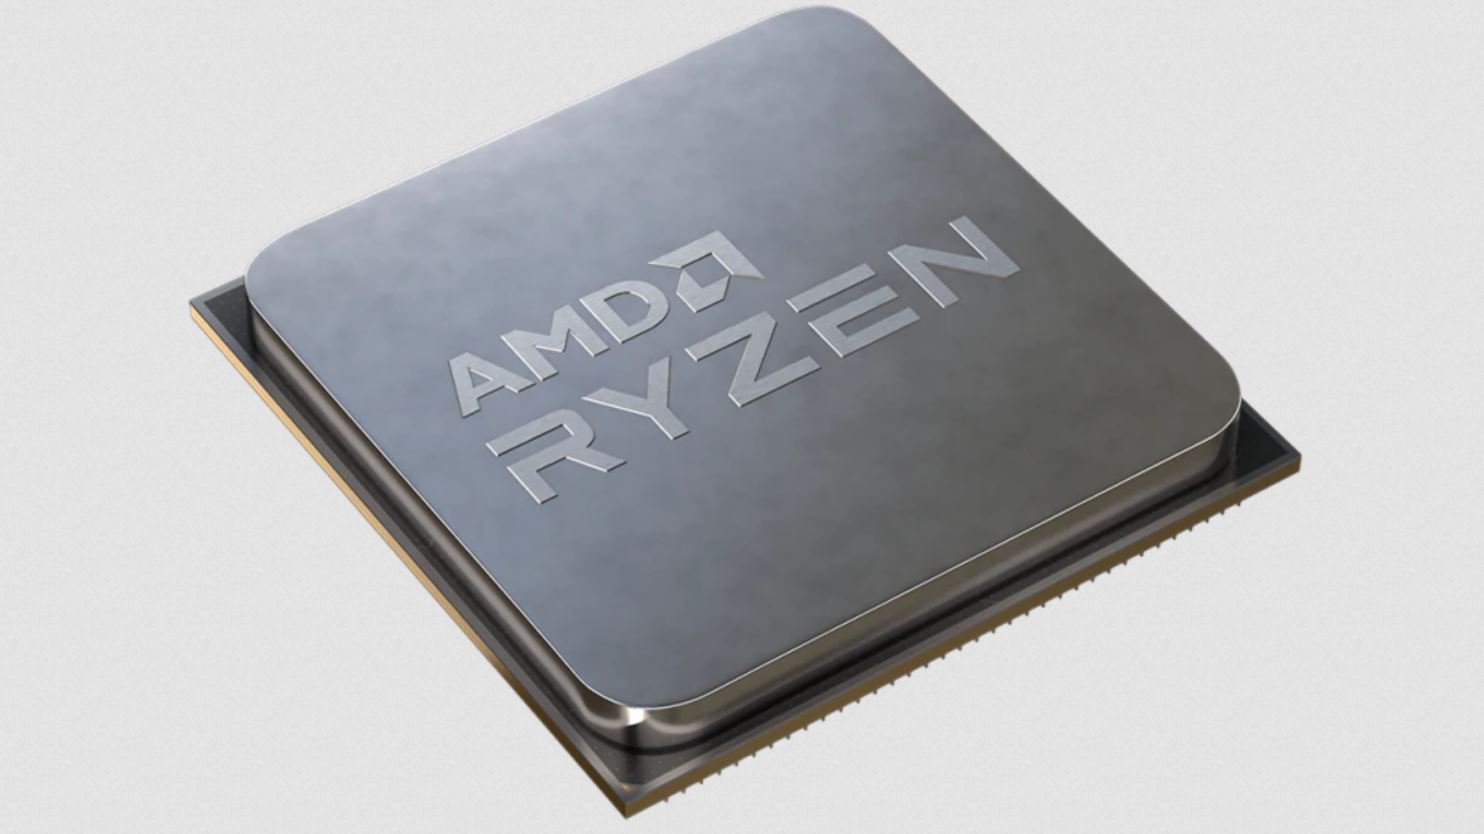 Immagine pubblicata in relazione al seguente contenuto: AMD lancia le CPU Ryzen 9 5950X, 5900X, Ryzen 7 5800X e Ryzen 5 5600X | Nome immagine: news31191_AMD-Ryzen-5000_1.jpg